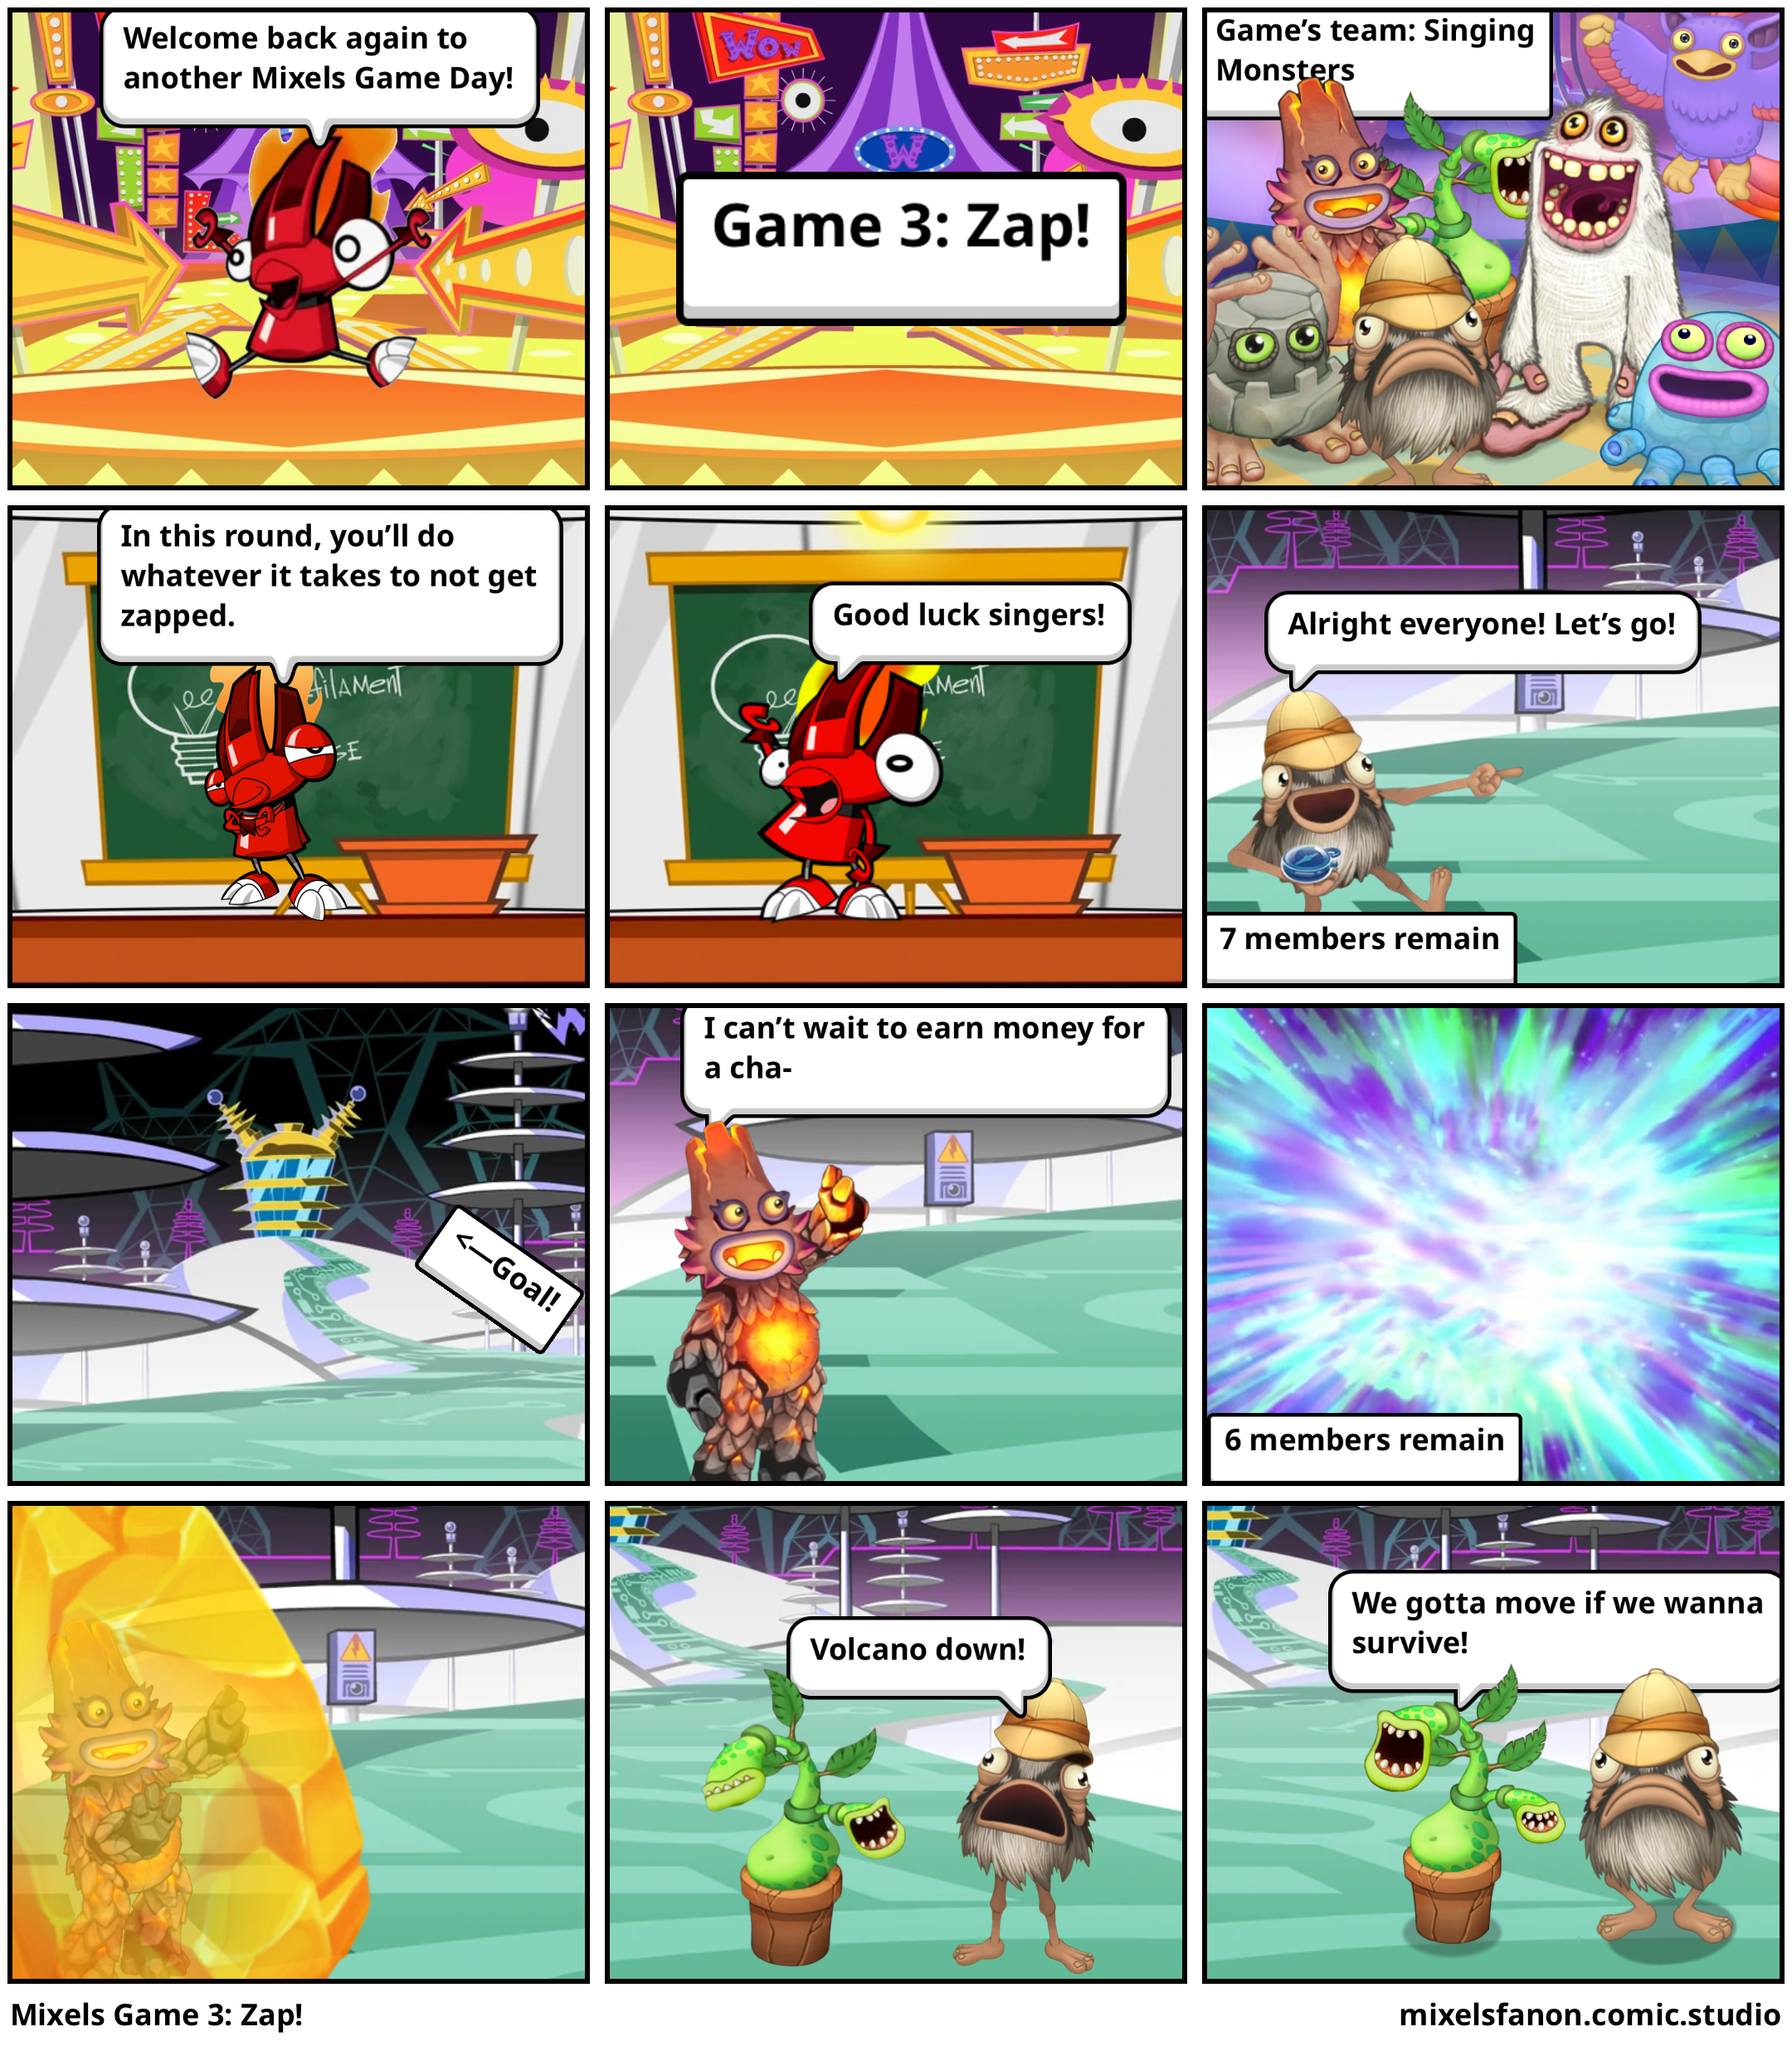 Mixels Game 3: Zap!